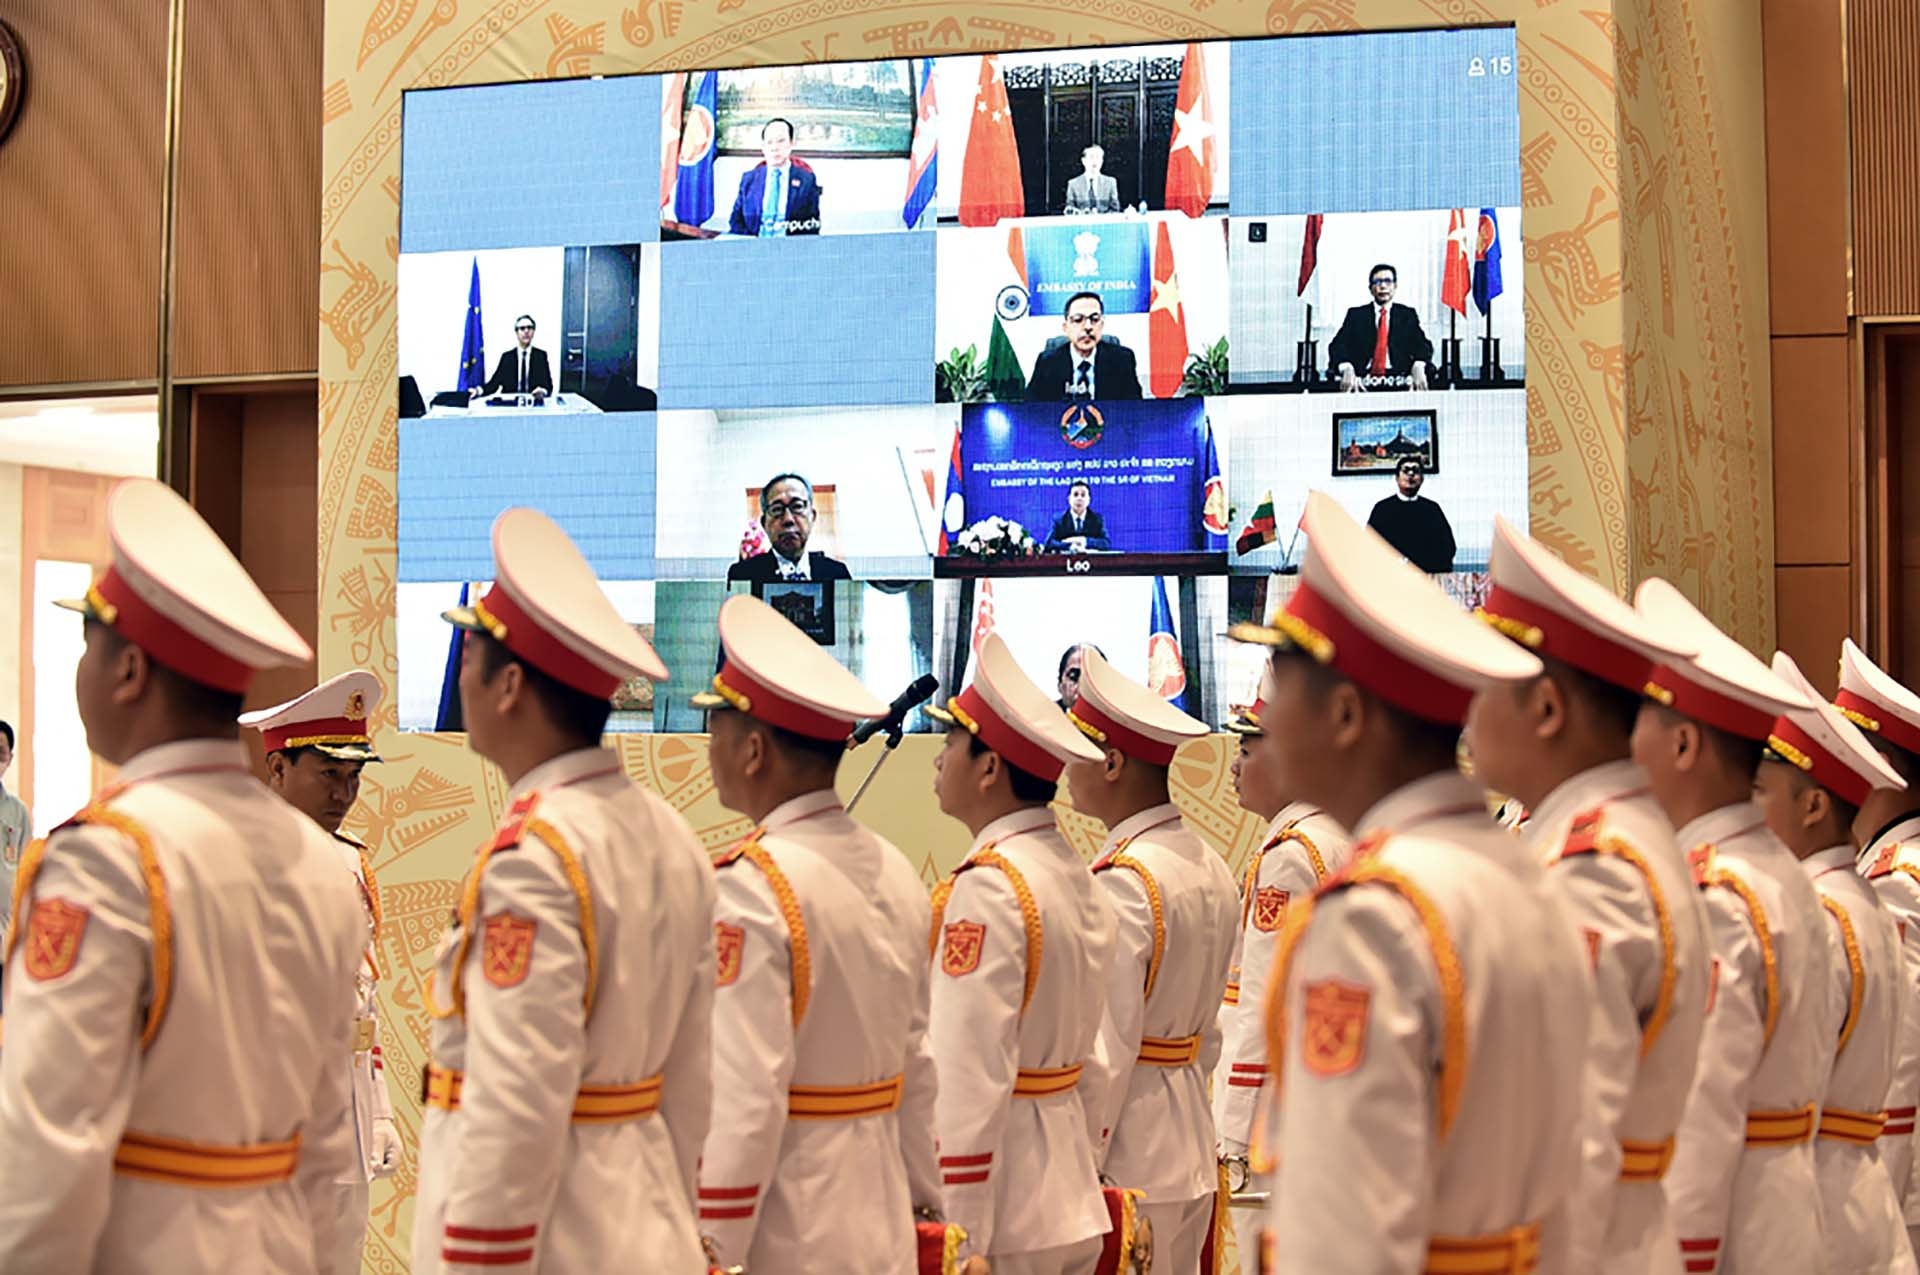 Lễ kỷ niệm được tổ chức trực tuyến tới các cơ quan đại diện nước ngoài tại Việt Nam, các cơ quan đại diện Việt Nam tại các nước và tổ chức quốc tế. (Nguồn: VGP)